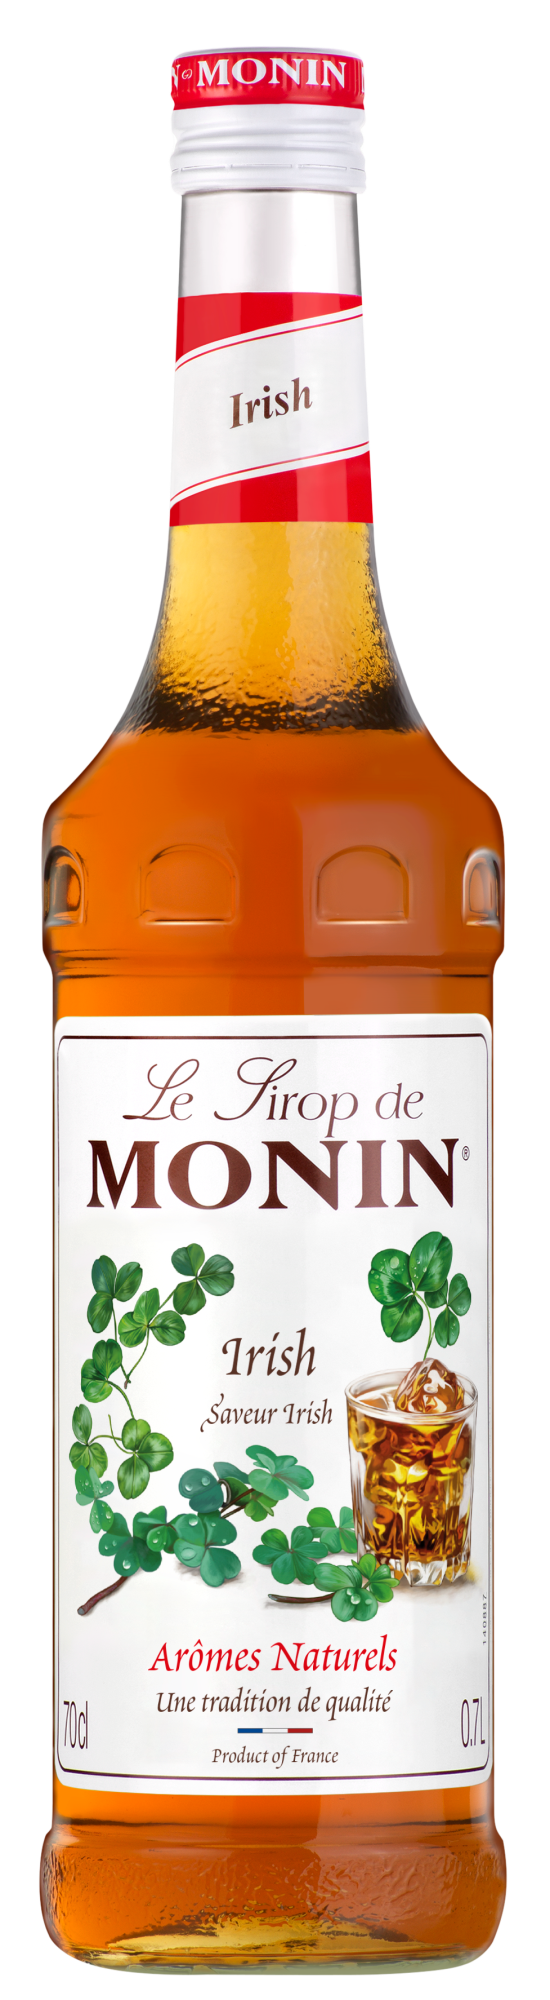 MONIN Premium Irish Syrup 700 ml